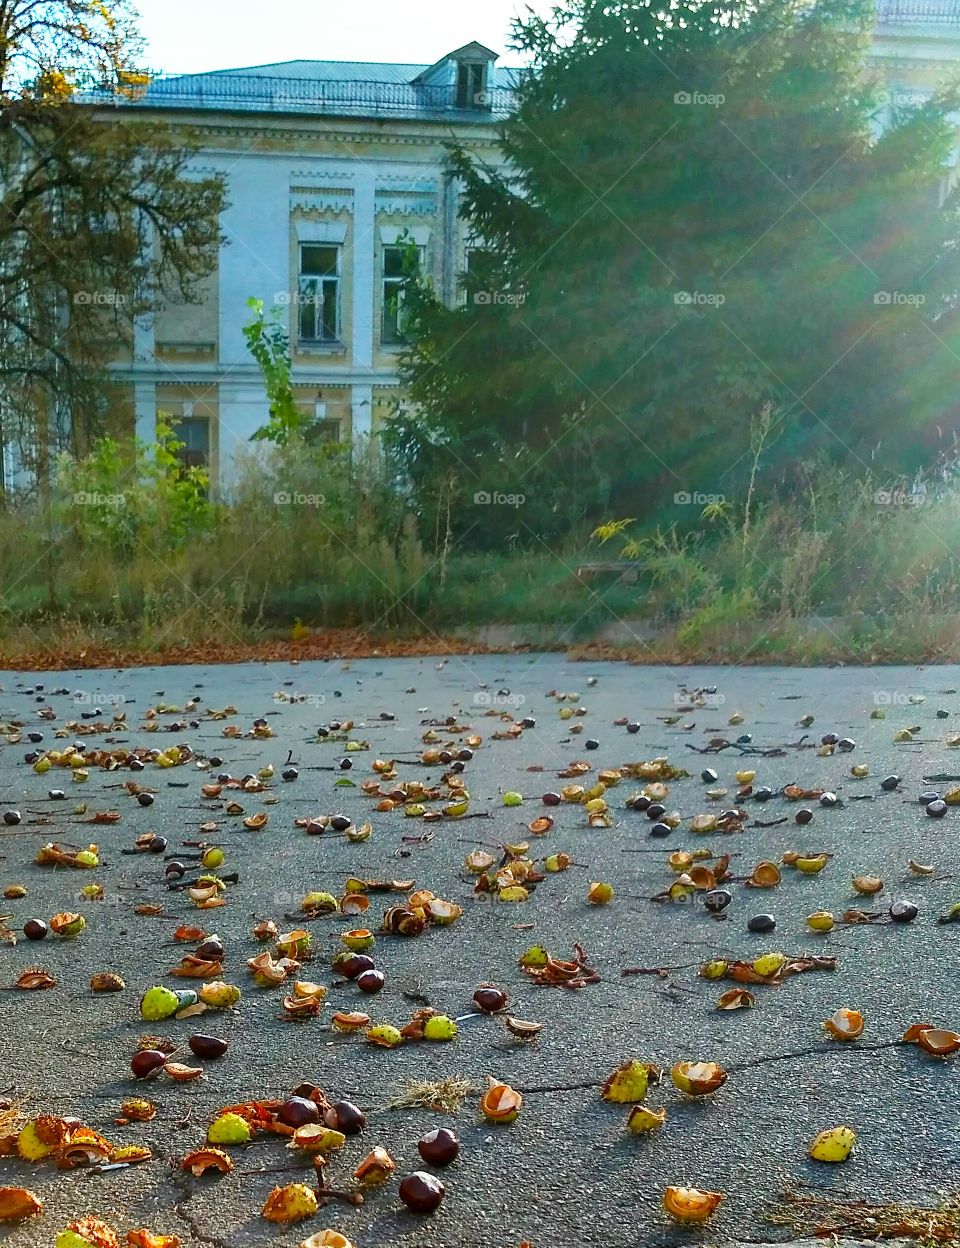 morming.sunrise. autumn.Ukraine.